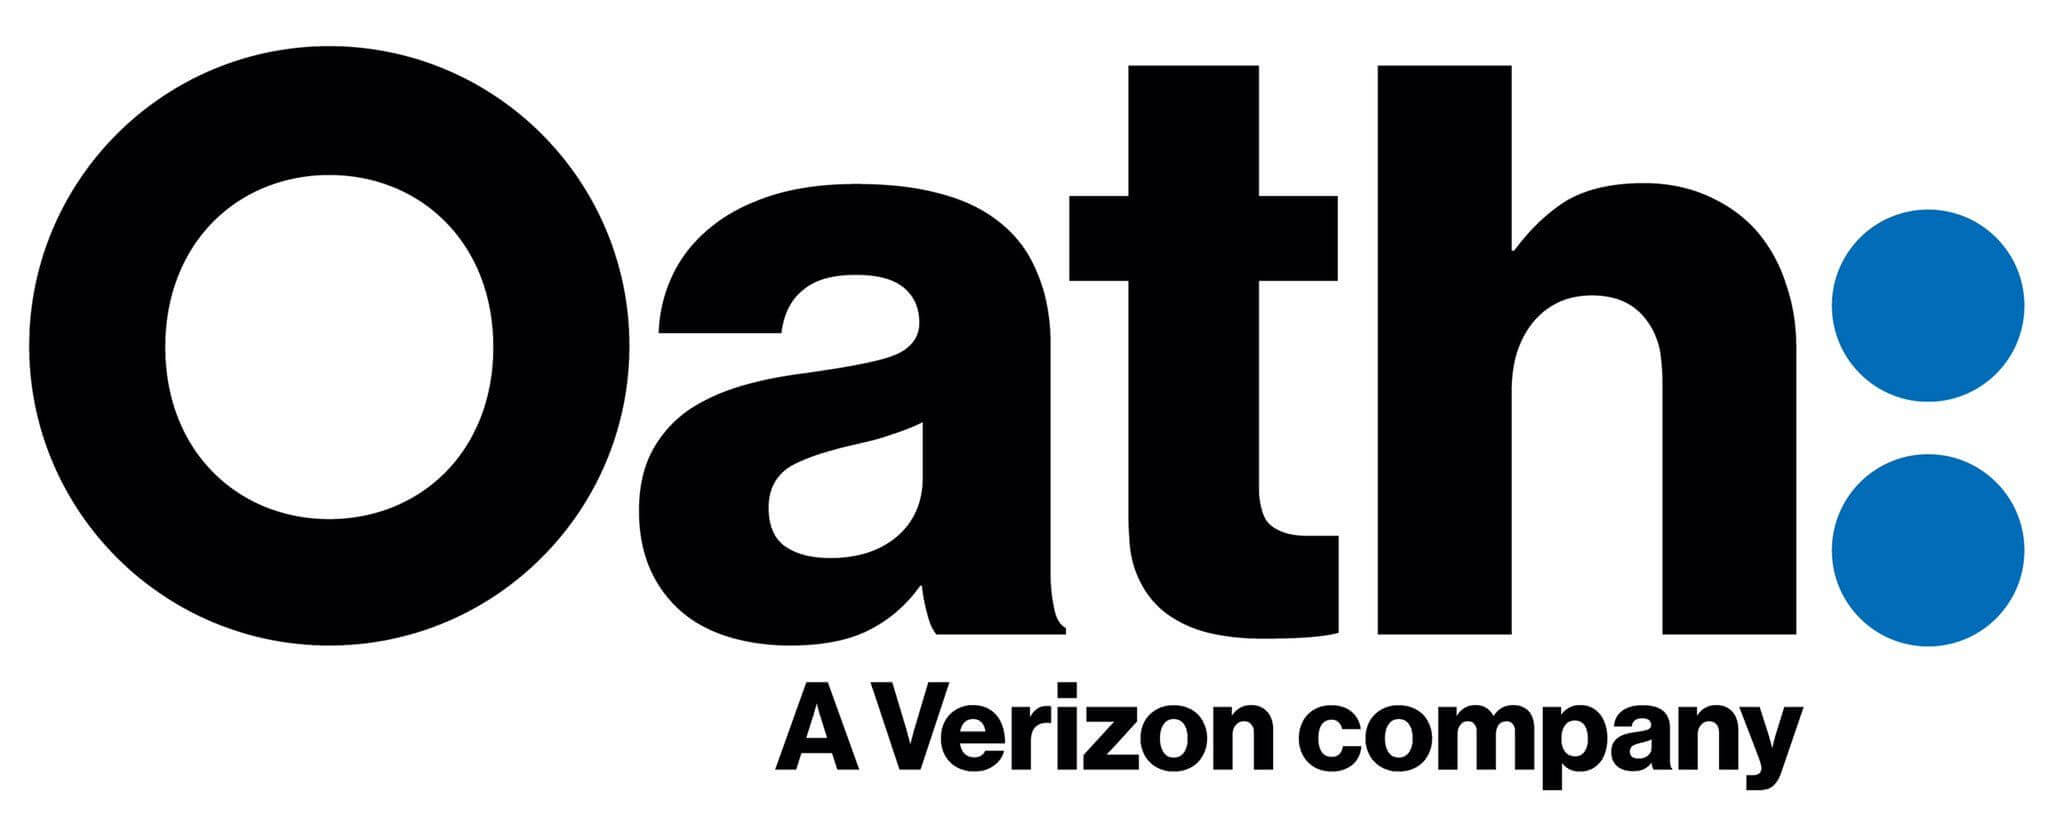 oath logo